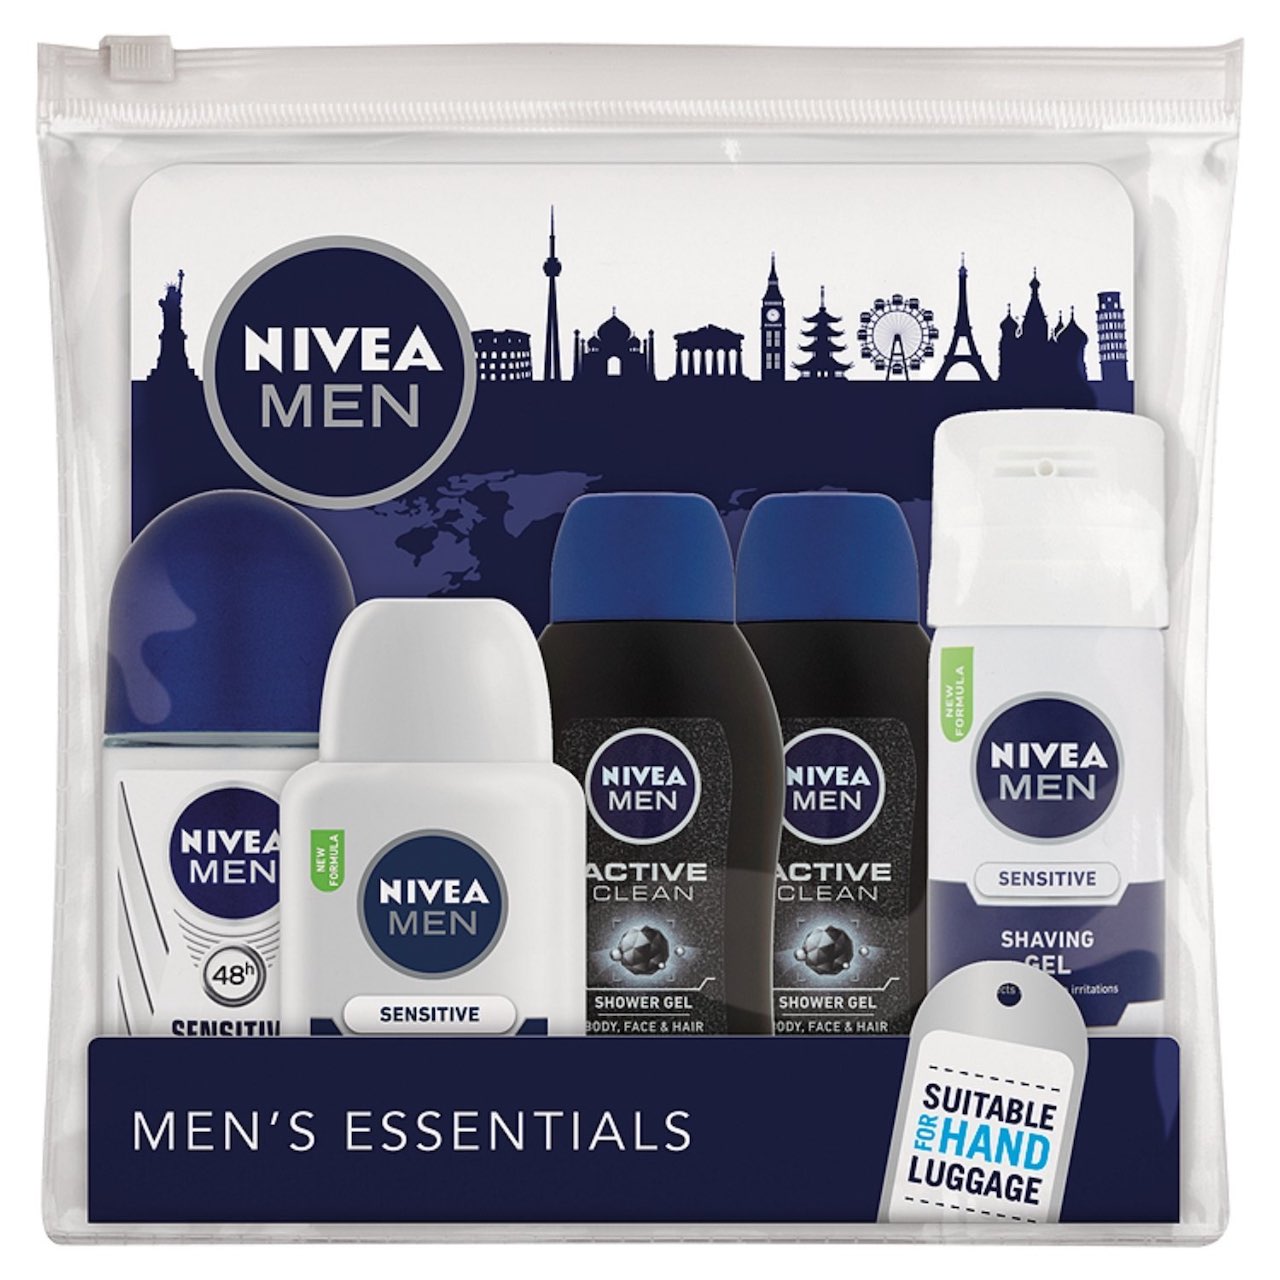 NIVEA Travel Essentials for Men